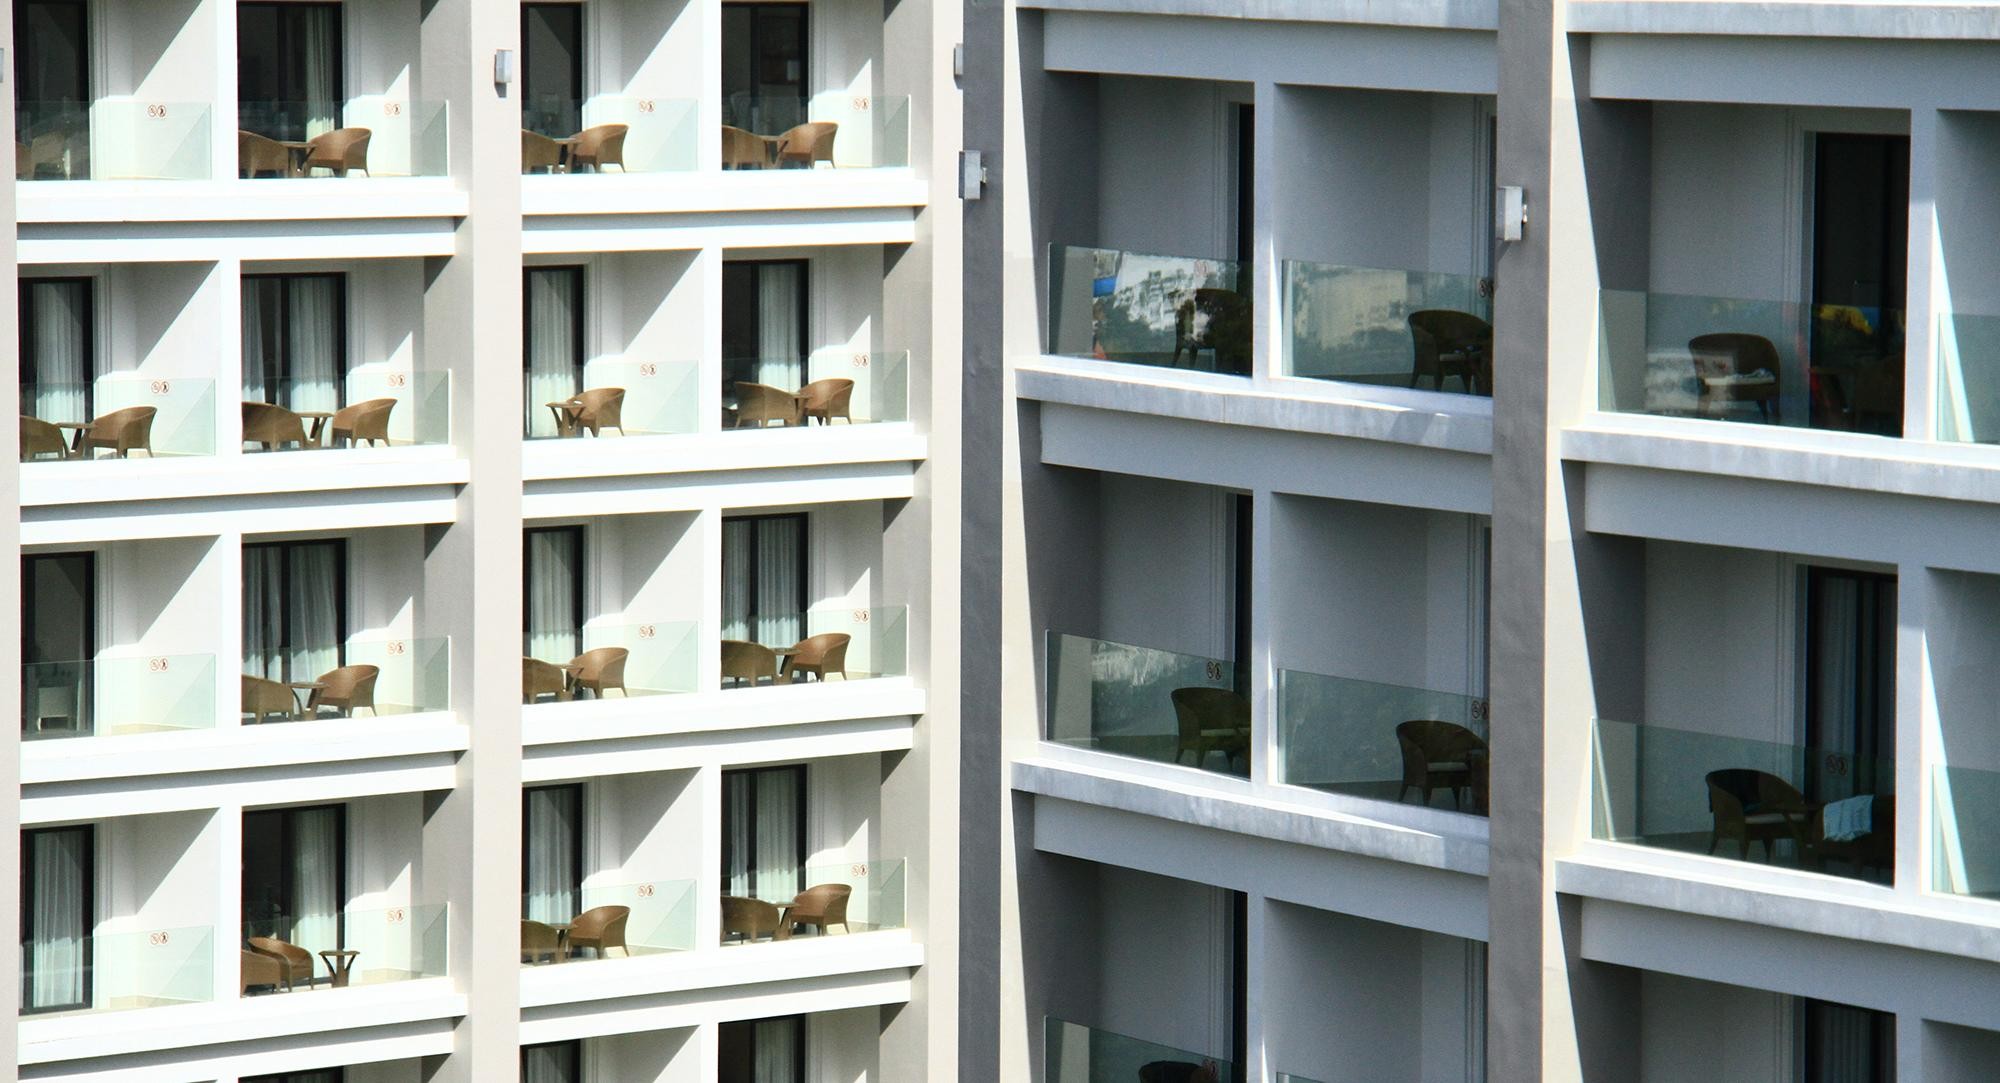 
Loại căn hộ condotel có nhiều điểm tương đồng so với căn hộ chung cư thông thường
